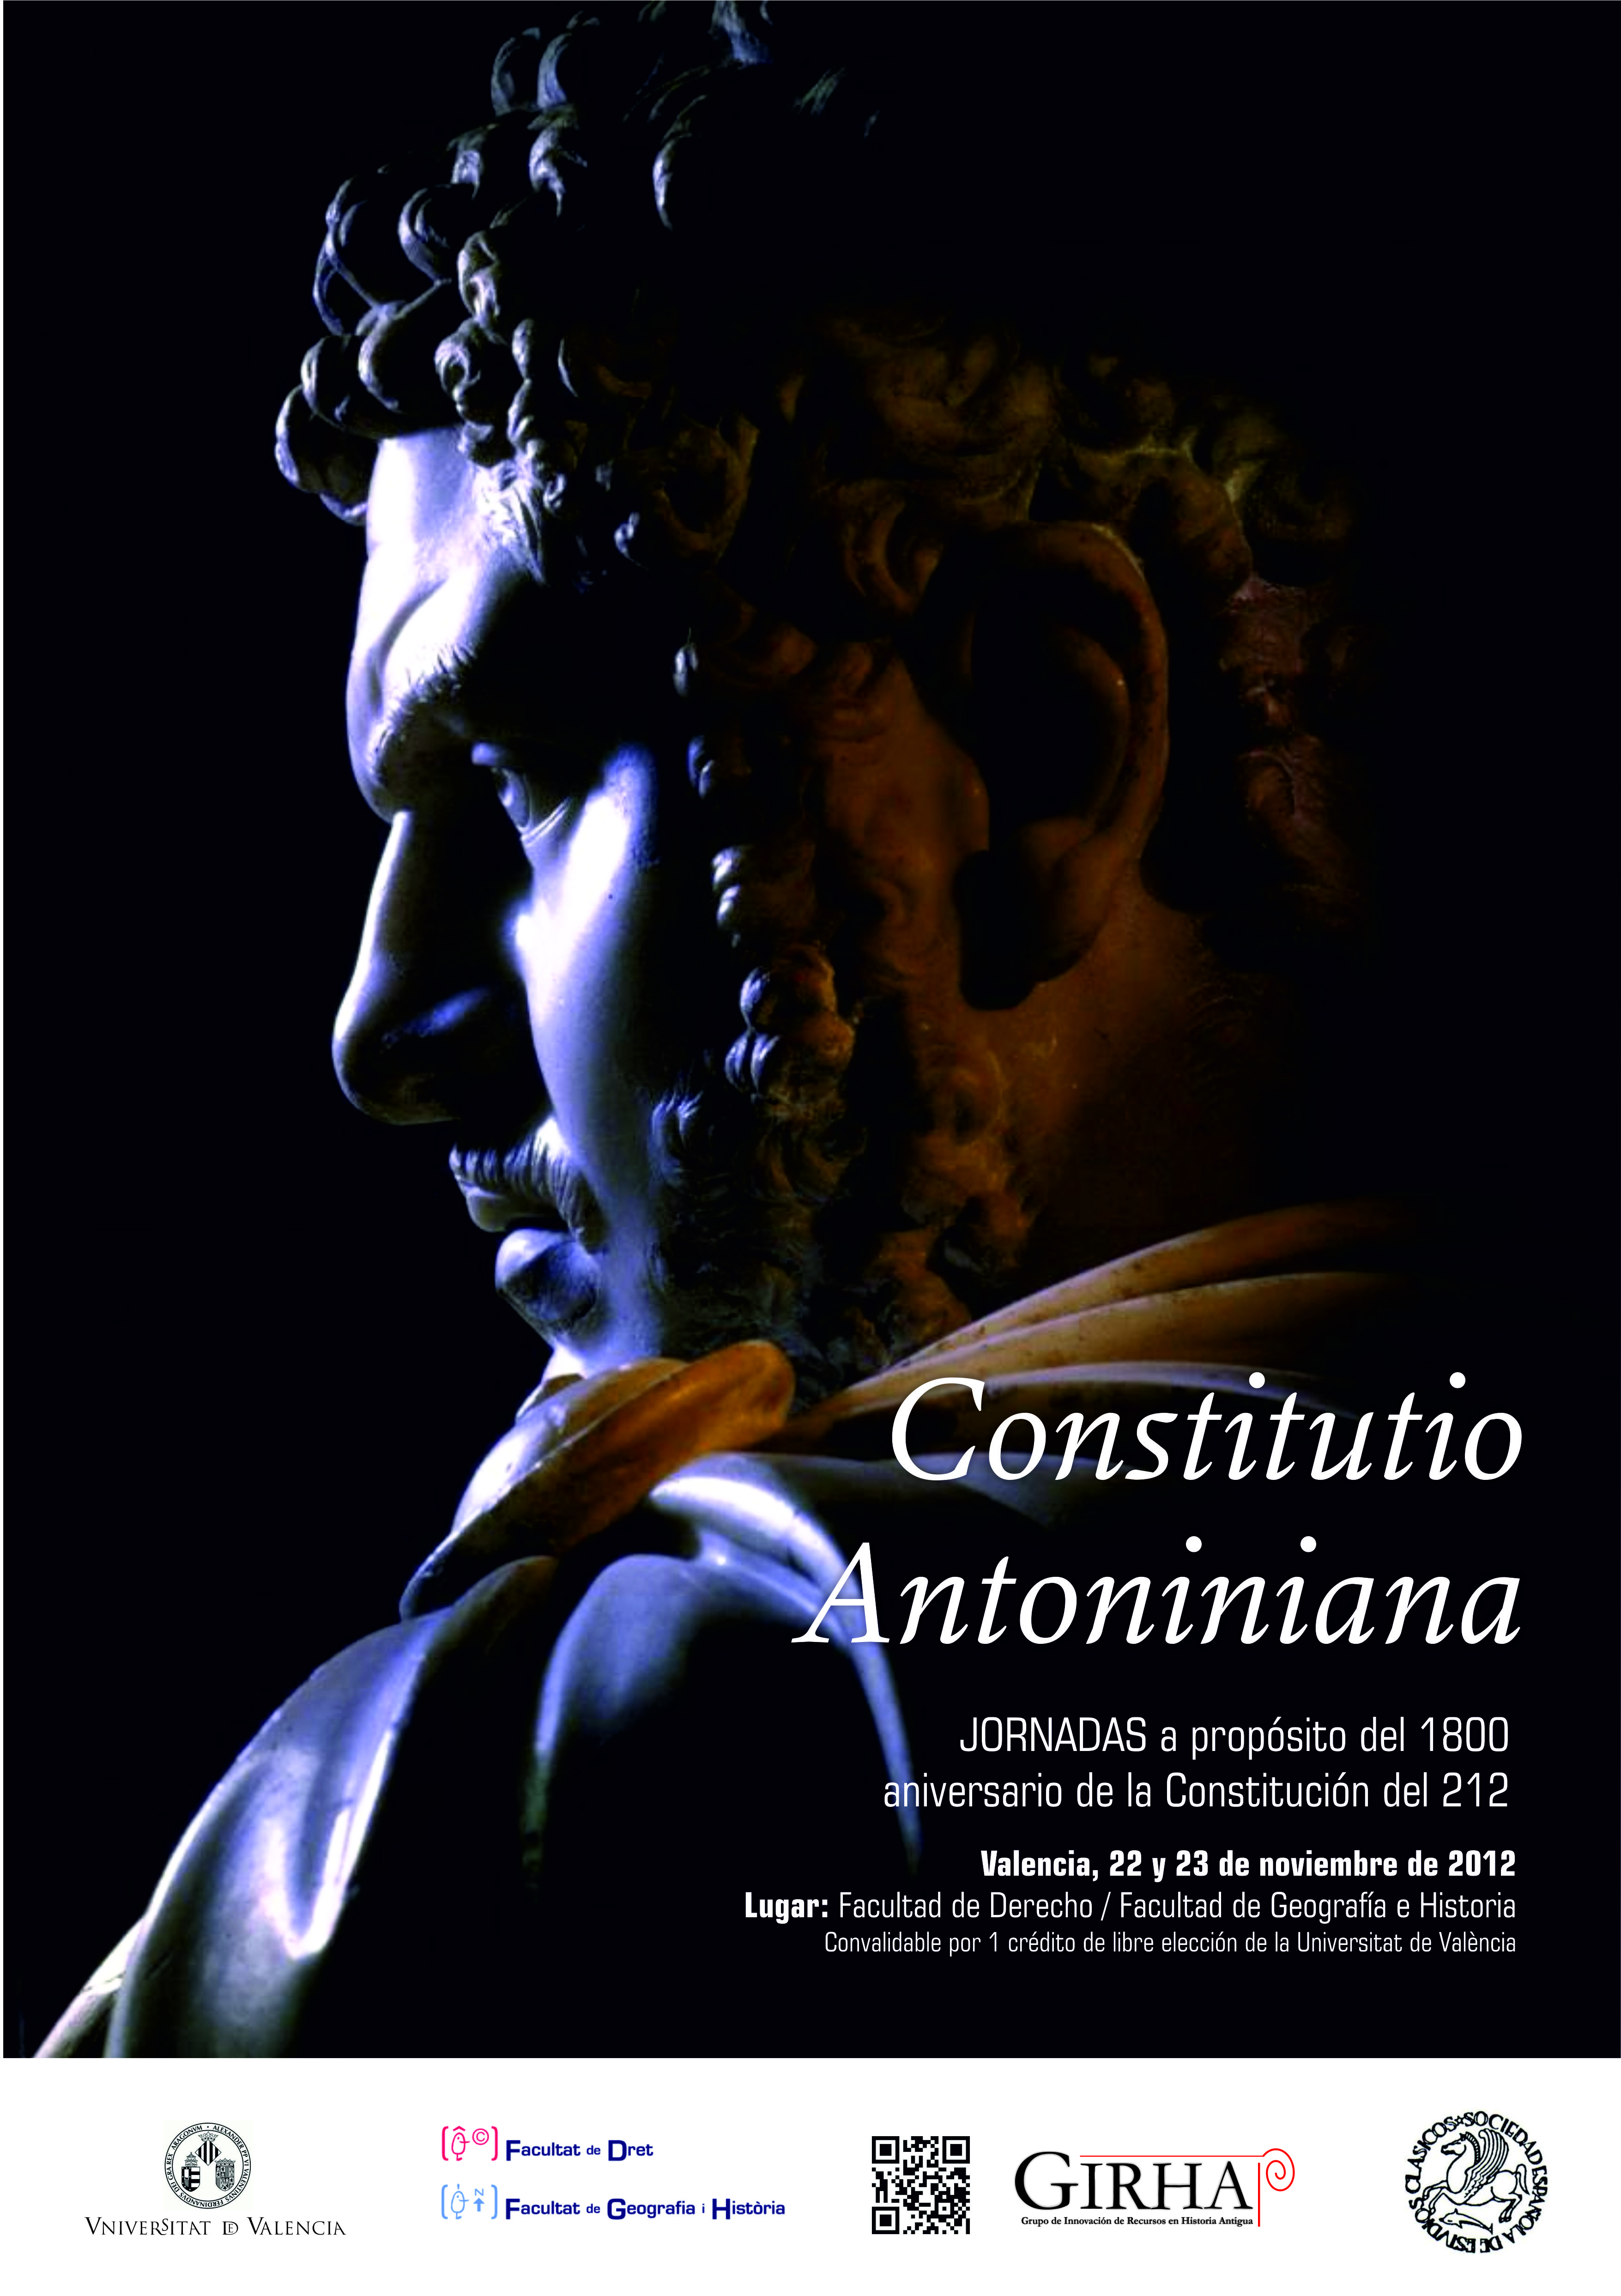 Constitutio Antoniniana. Jornadas a propósito del 1800 aniversario de la Constitución del 212